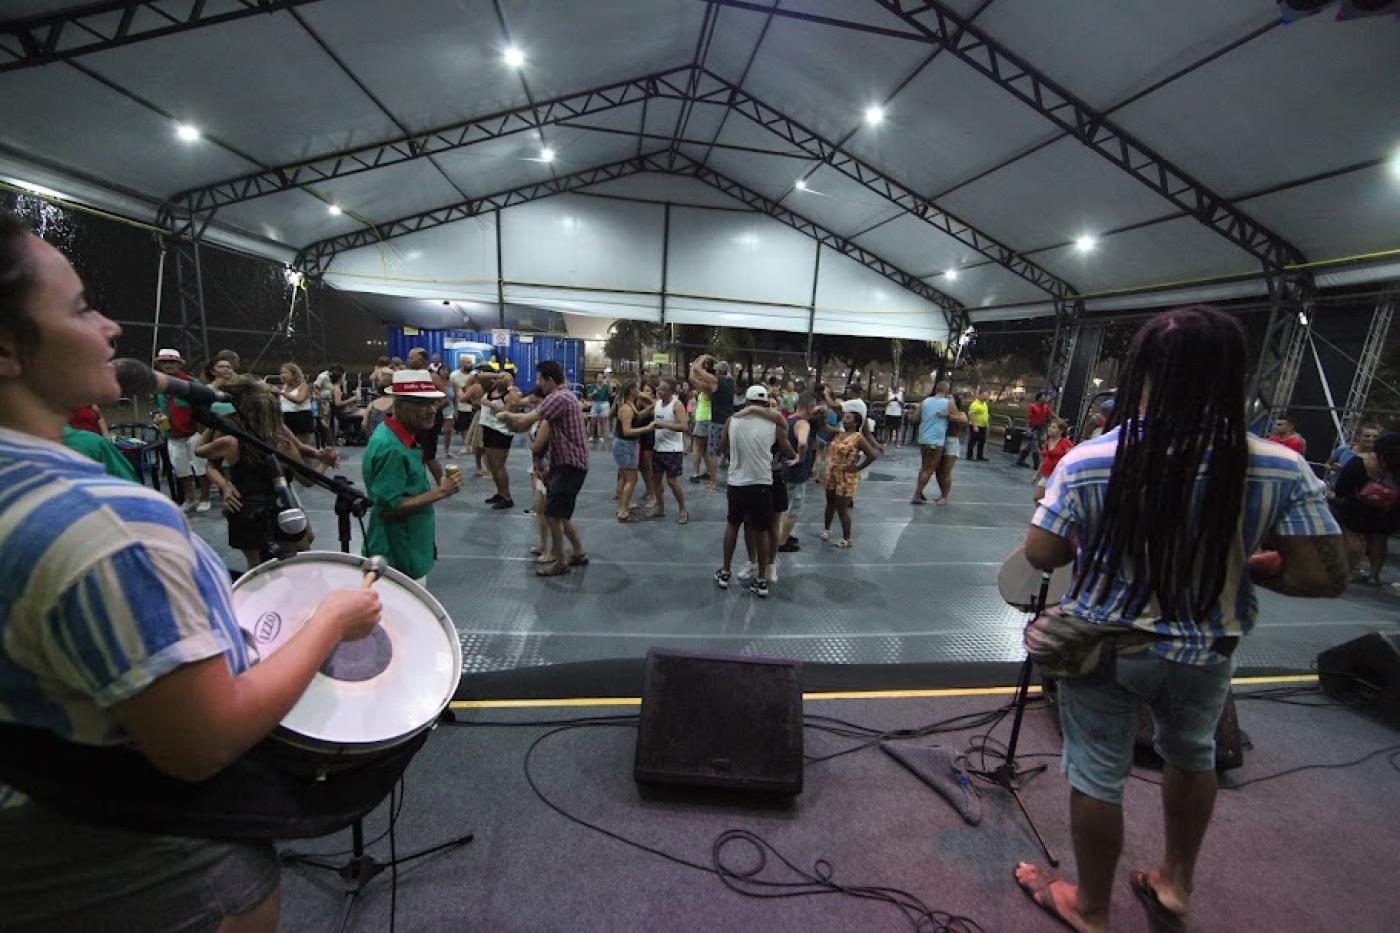 músicos tocam no palco enquanto público dança ao fundo sob tenda. #paratodosverem 